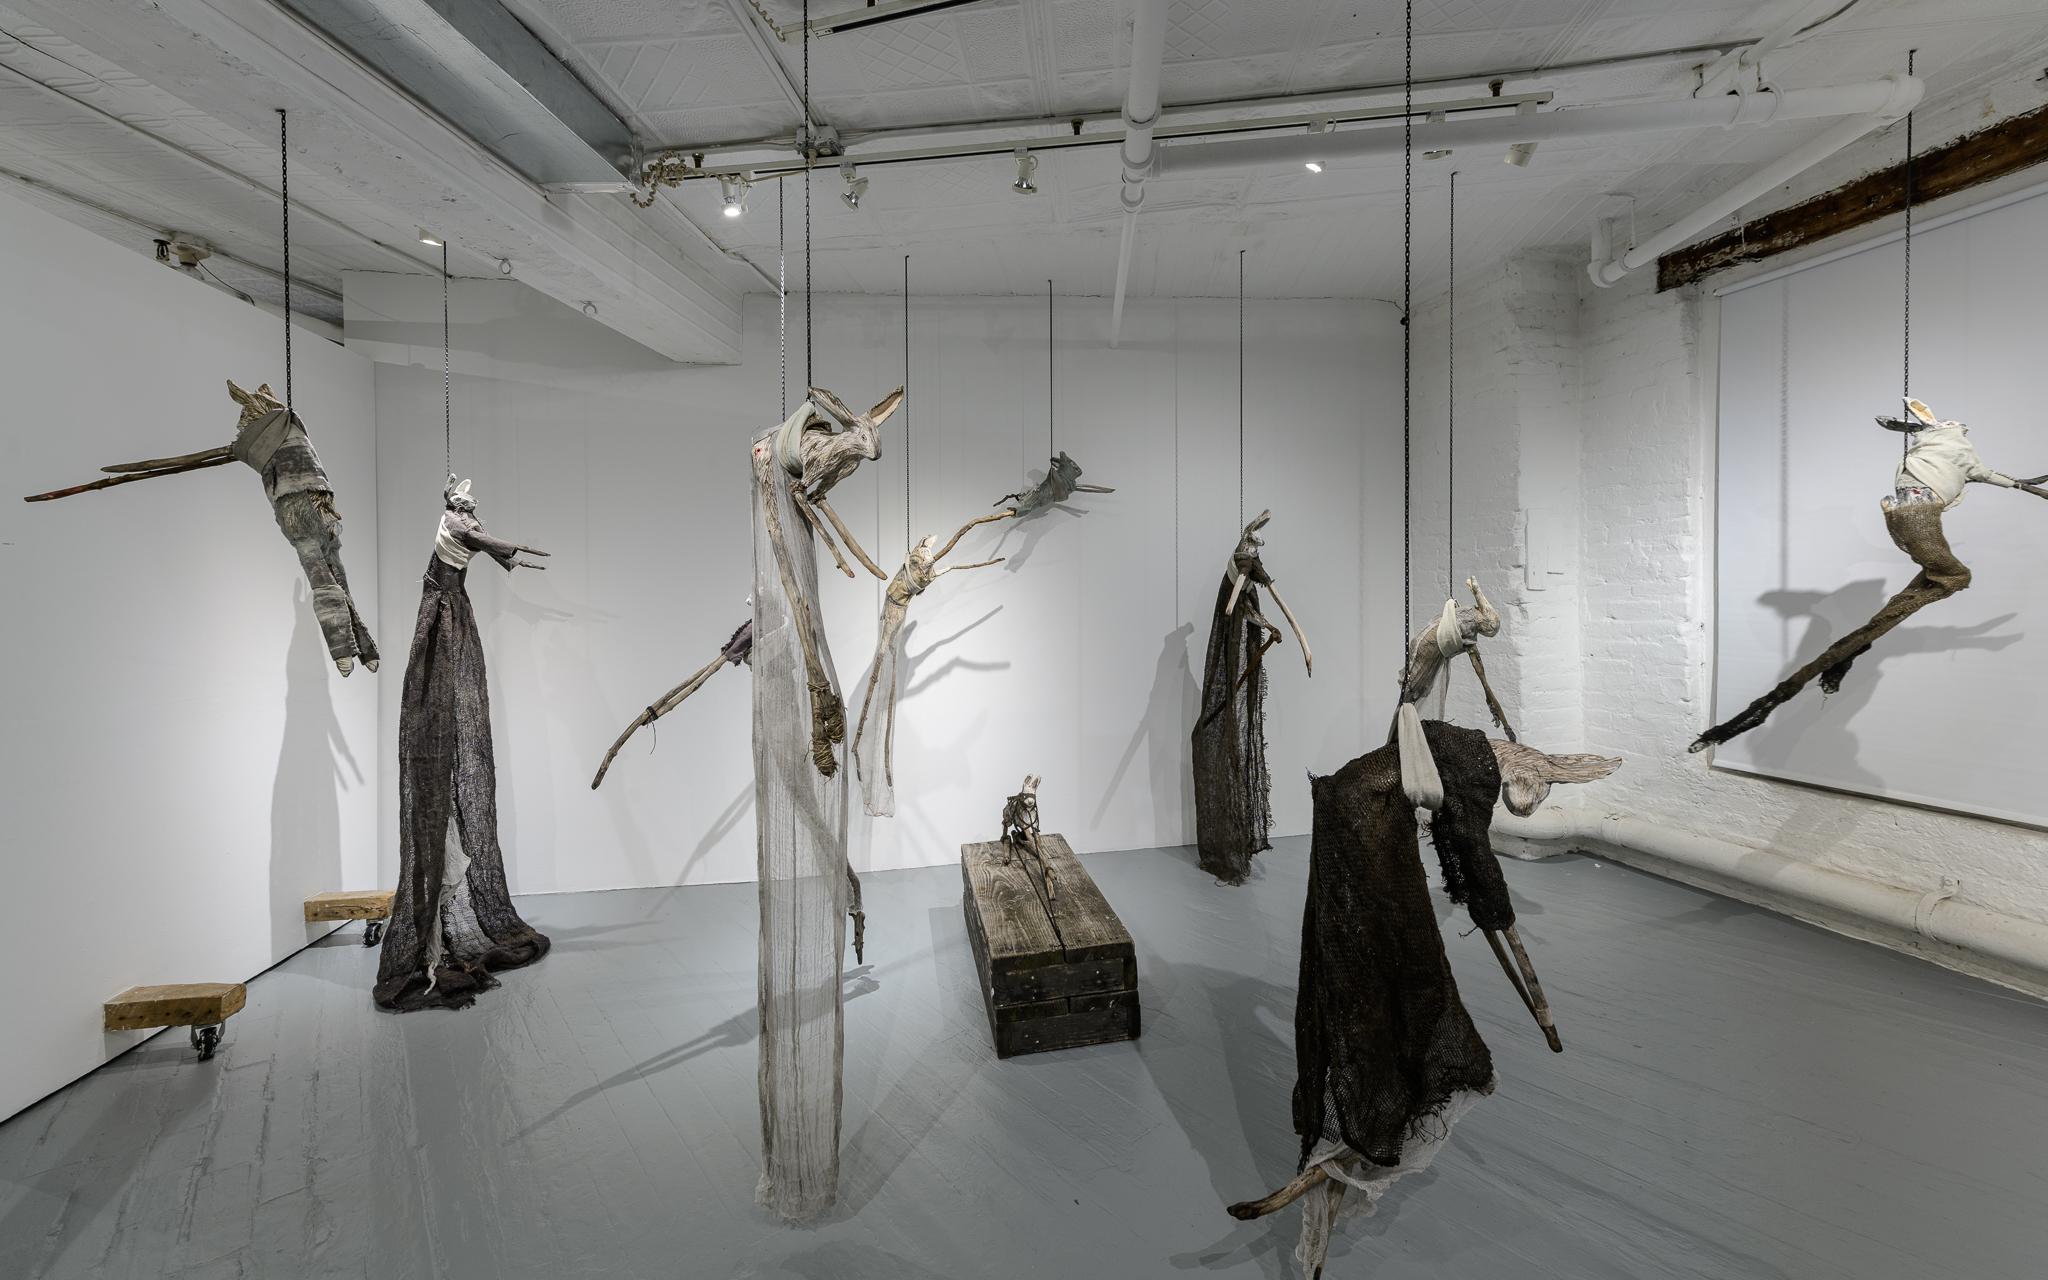 Elizabeth Jordan est une artiste qui travaille principalement dans le domaine de la sculpture et dont les œuvres utilisent de multiples matériaux pour produire des formes uniques et organiques. Outre ses expositions individuelles et collectives à la